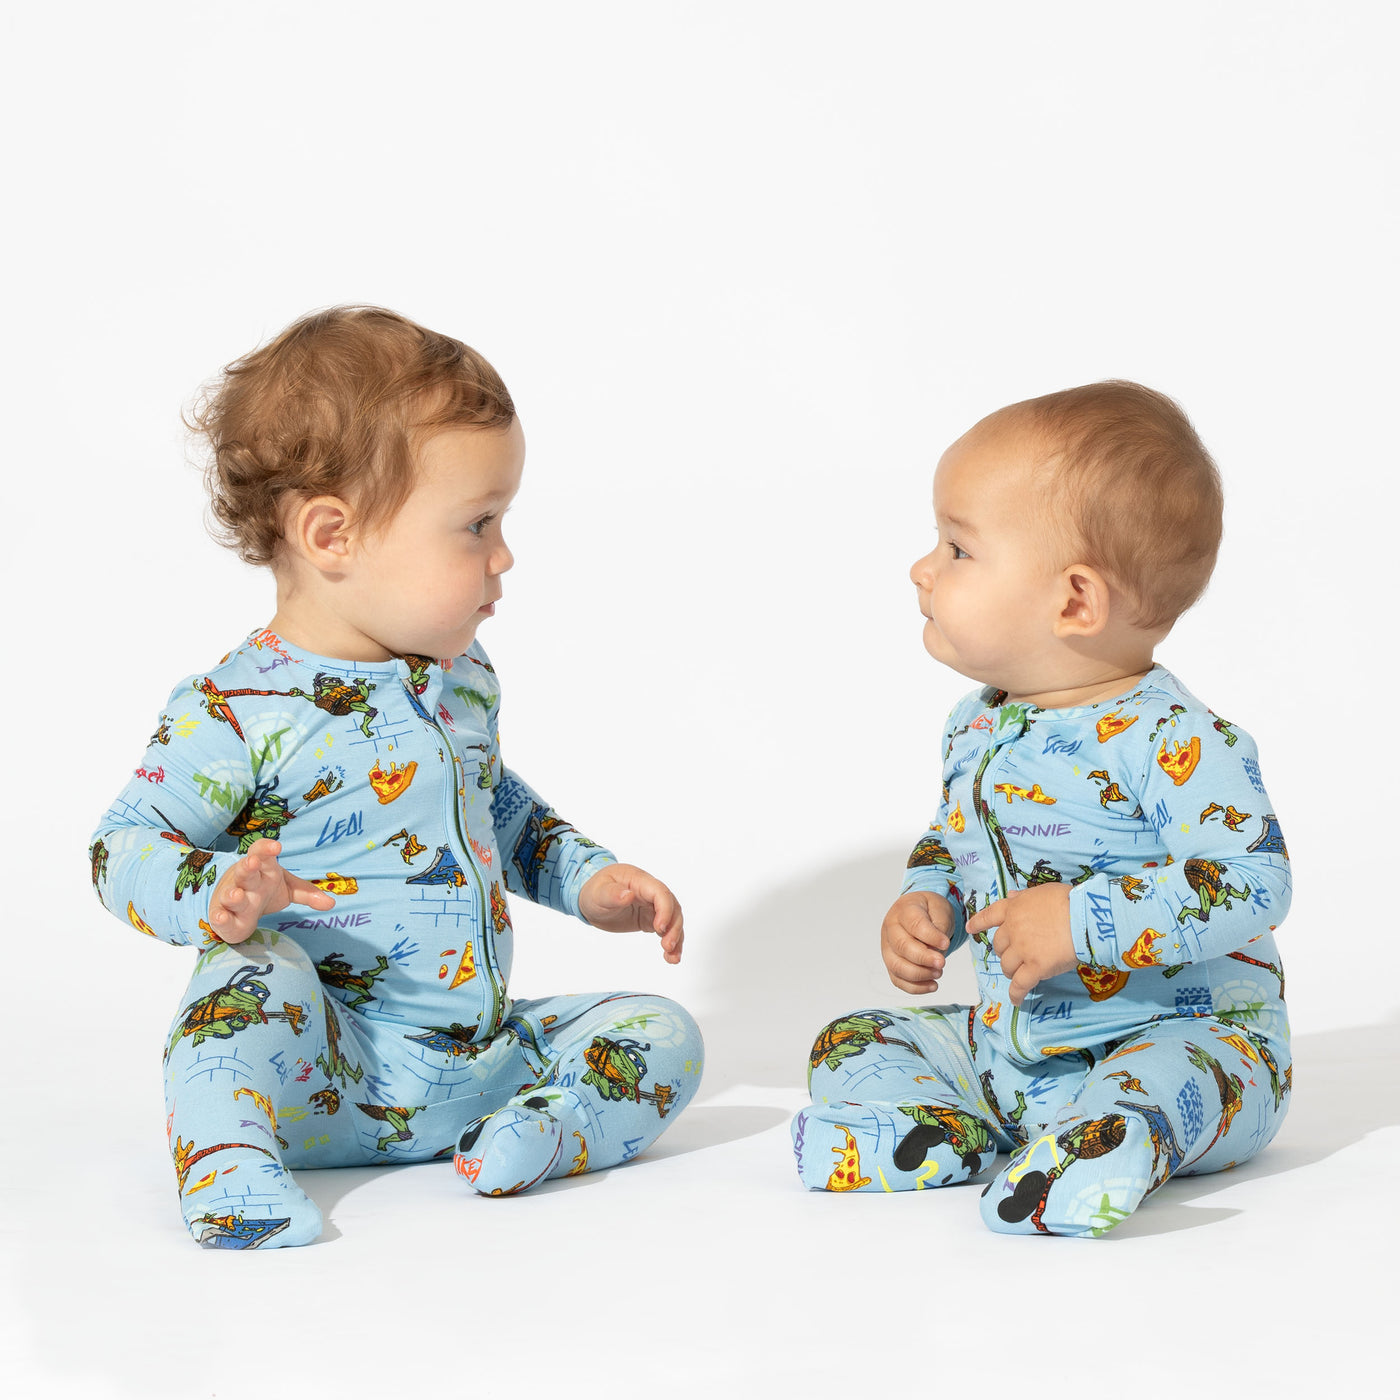 Infant Baby Teenage Mutant Ninja Turtles TMNT 6/12 Months Pajamas Costume